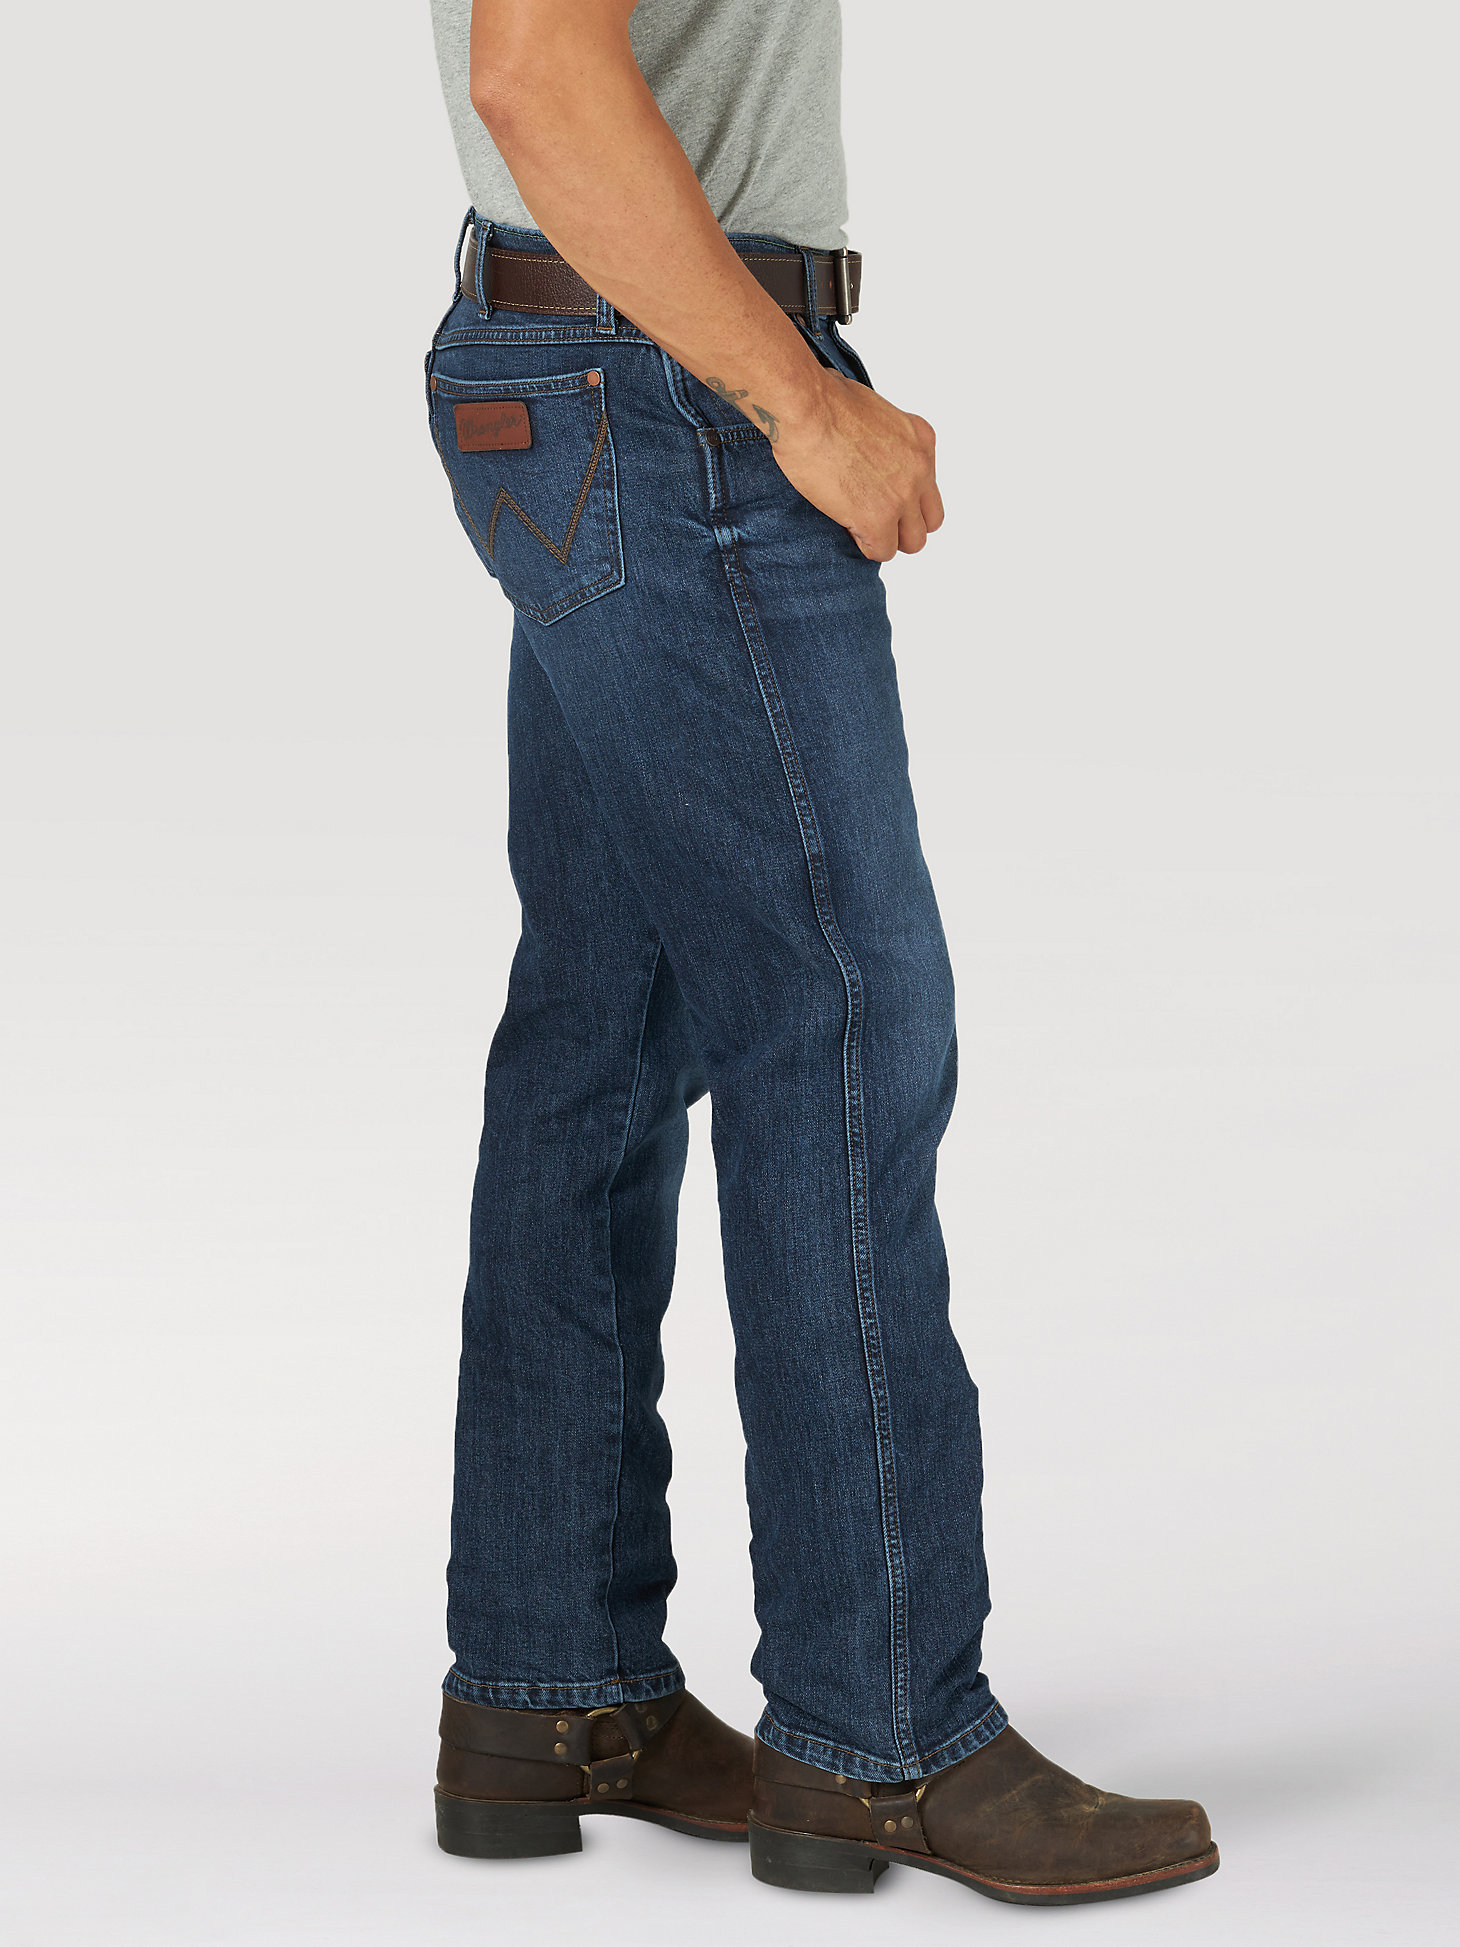 Wrangler Mens Retro Slim-Fit Straight-Leg Greybull Jean